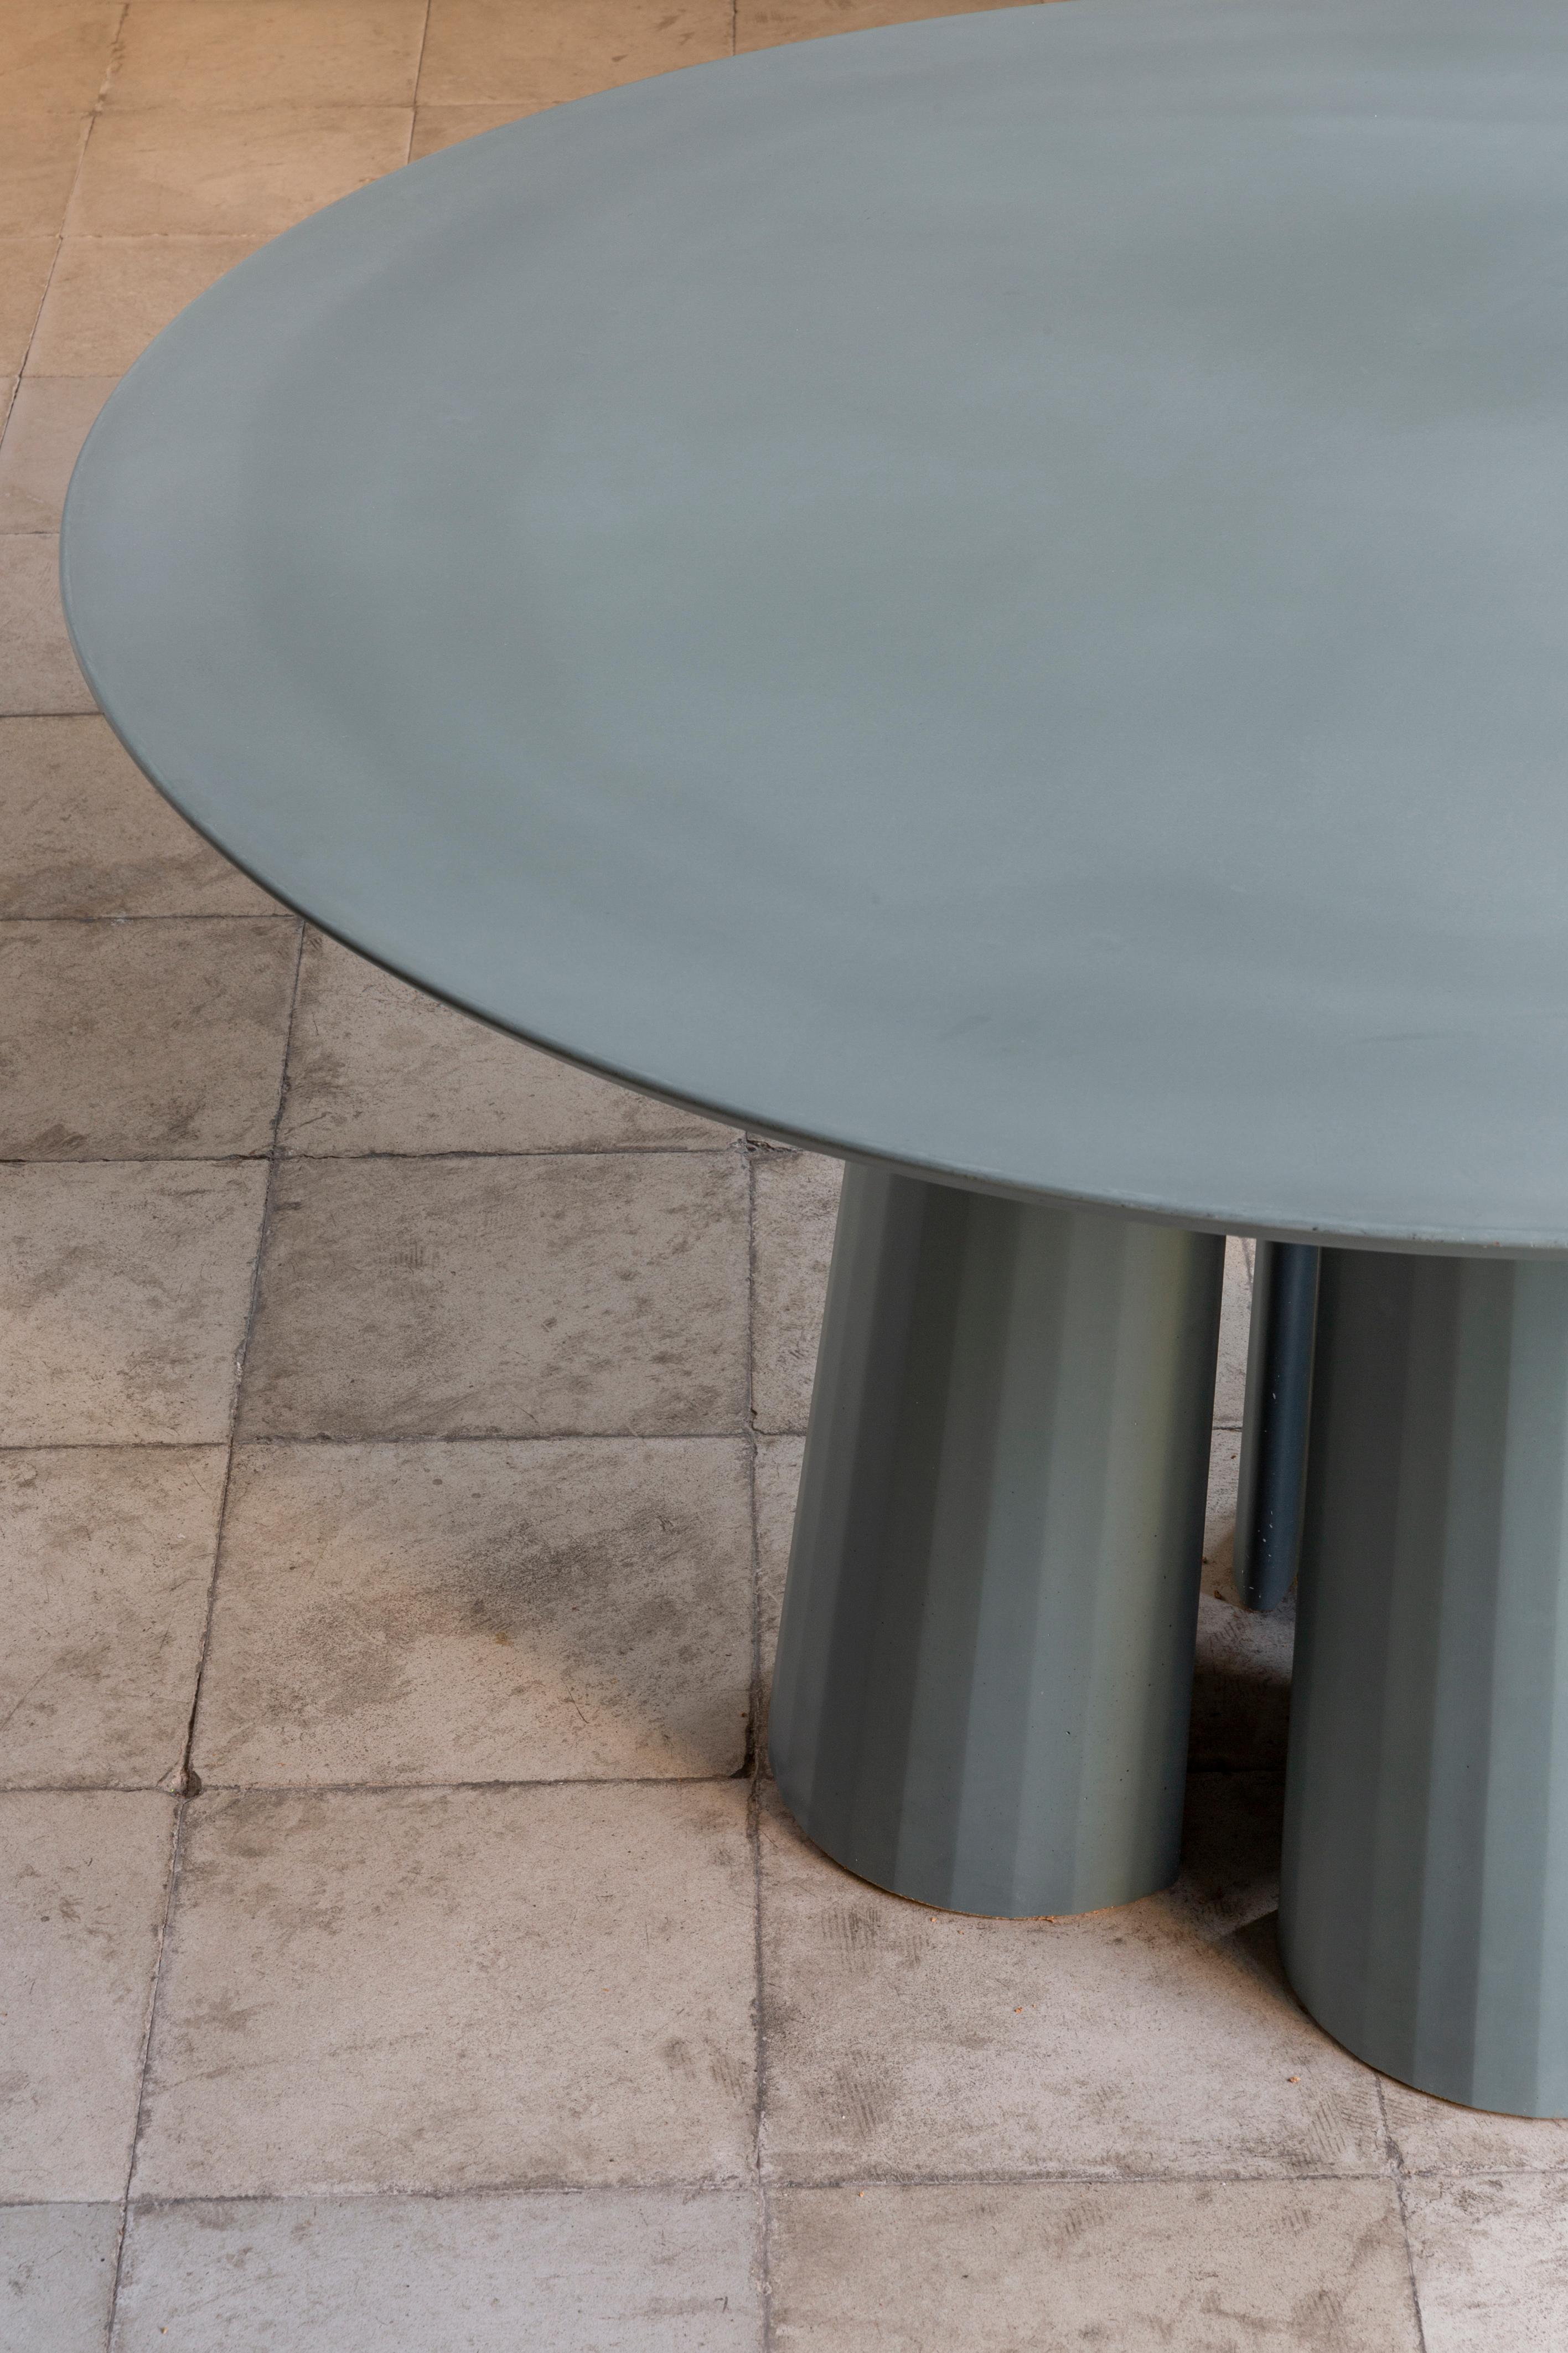 Esstisch in runder Form, Teil einer Kollektion von modularen Systemen aus ultrahochfestem Zementmörtel. UHPC-Tischplatte und -Boden in der Mischung gefärbt und sandgestrahlt. Erhältlich in acht verschiedenen Farben: Ziegel, Silber, Puder, Creme,